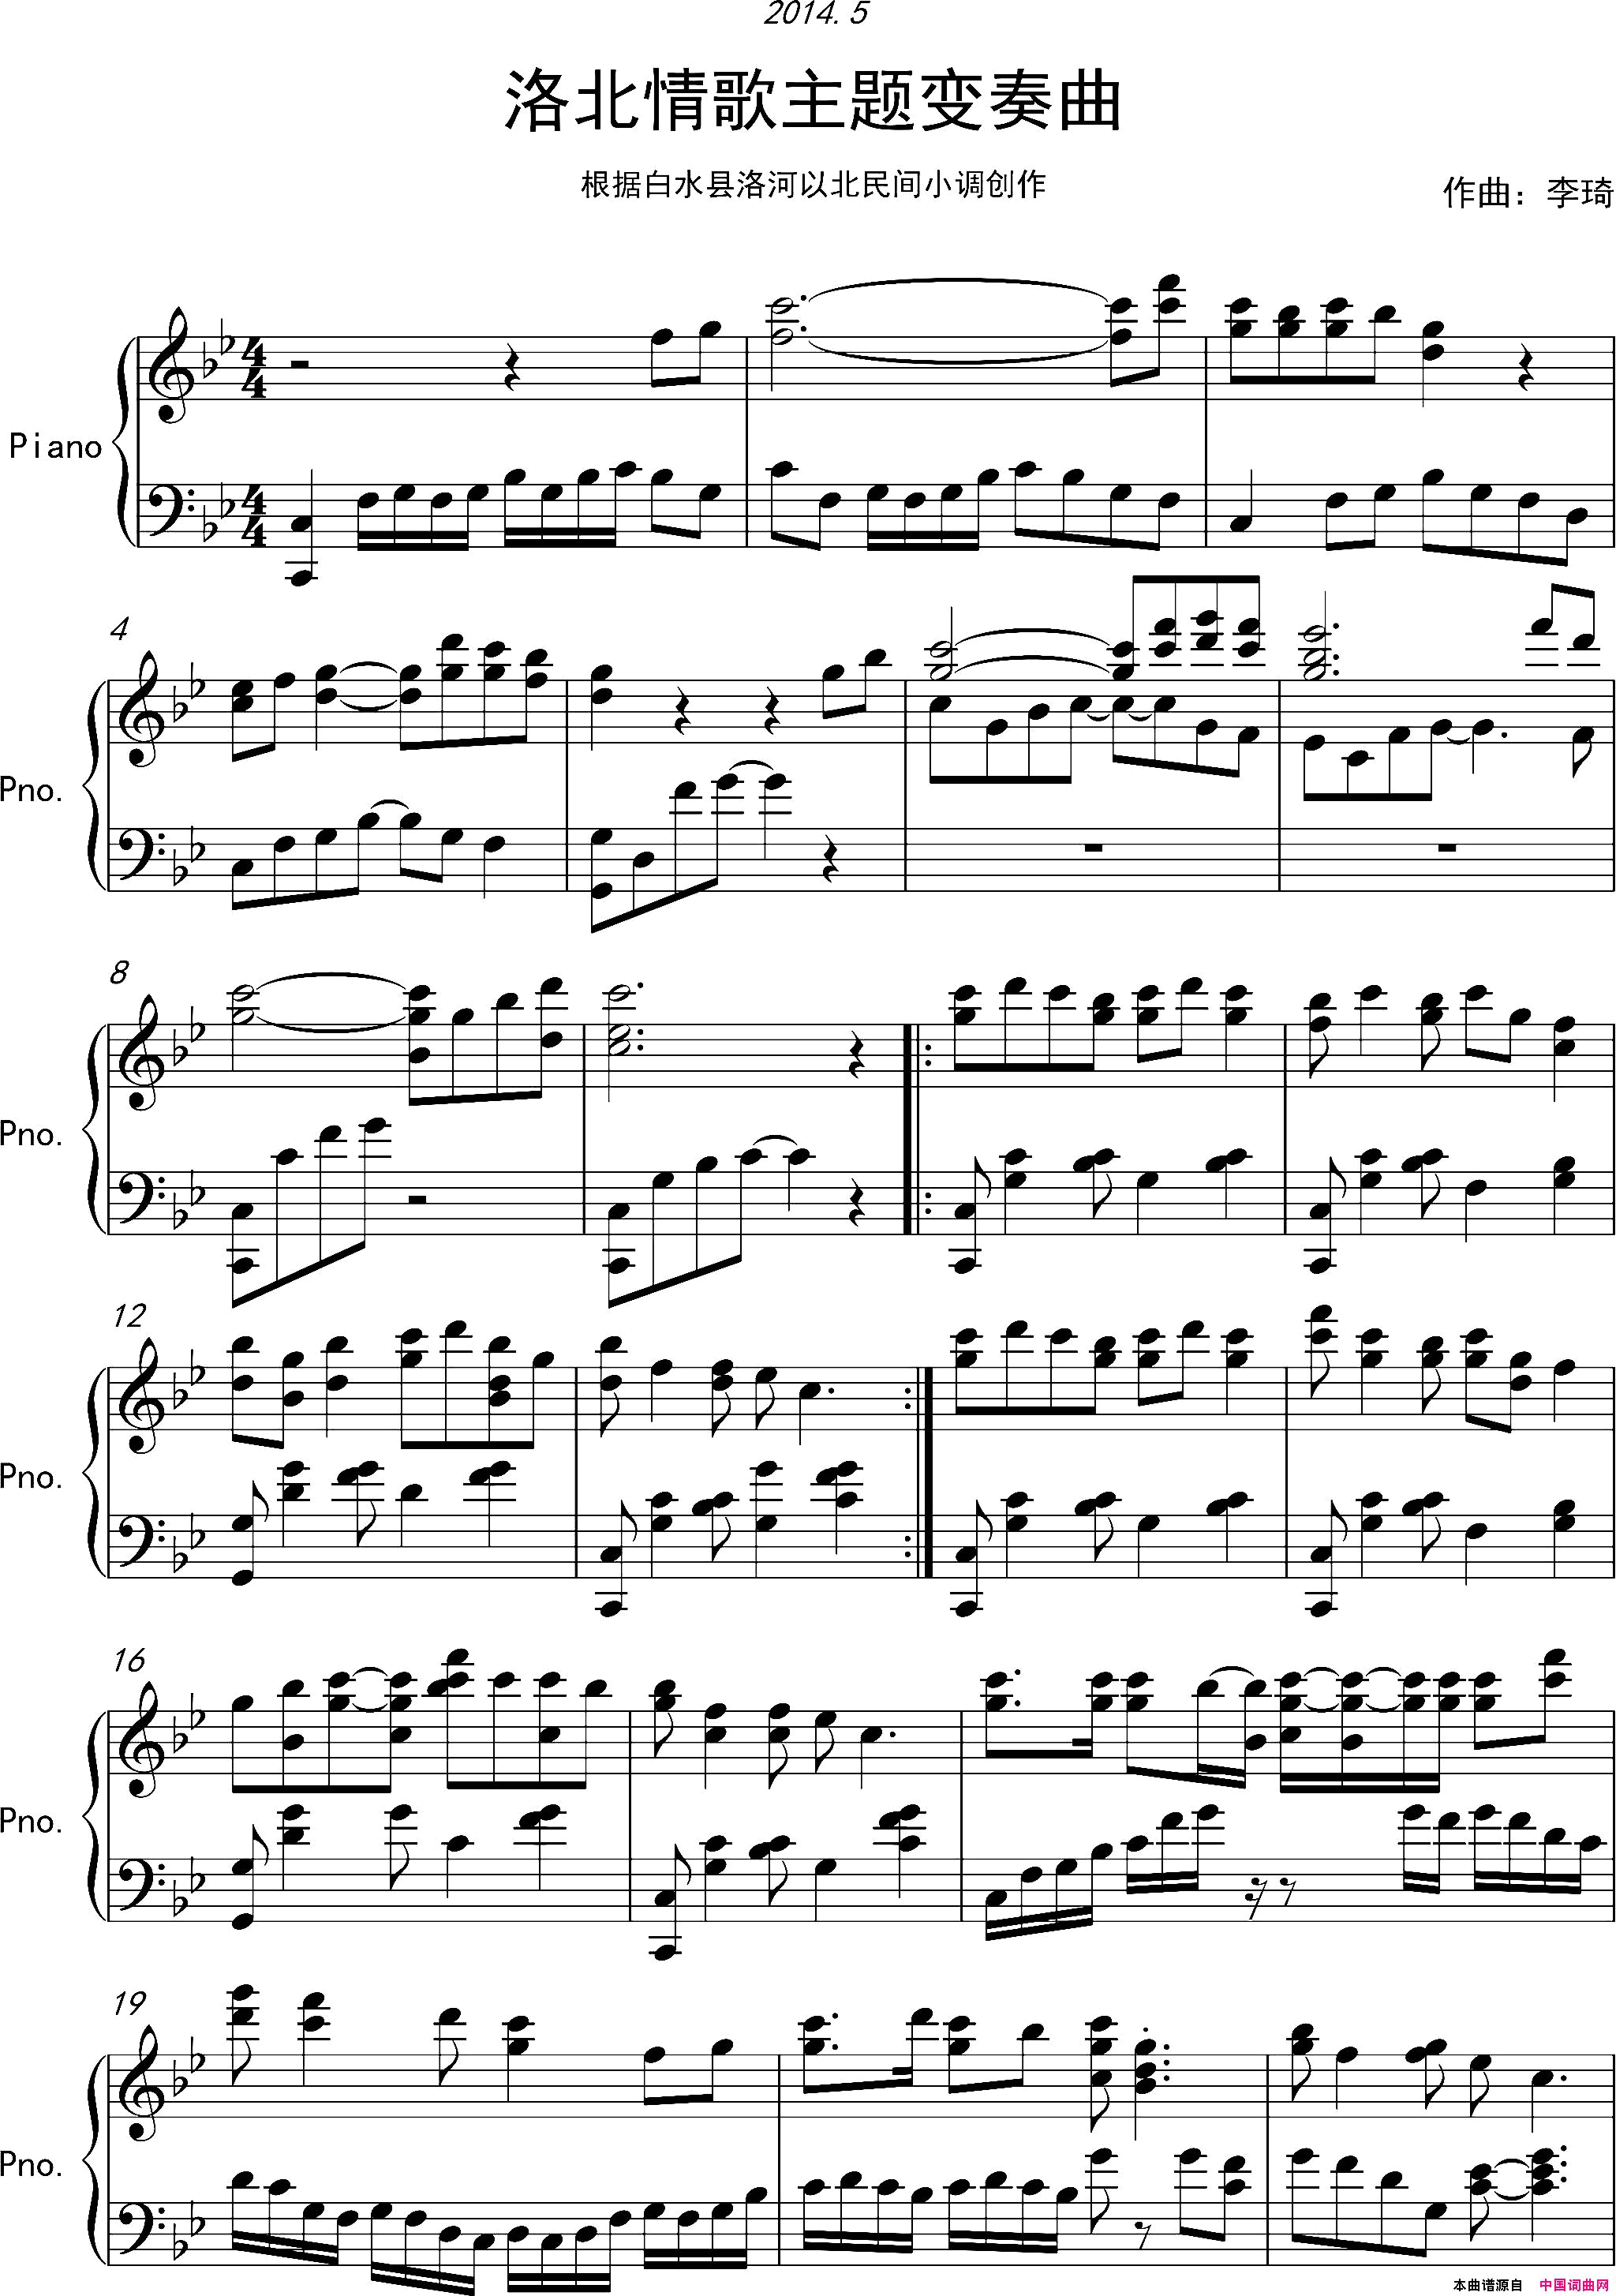 洛北情歌主题变奏曲小品钢琴简谱-1